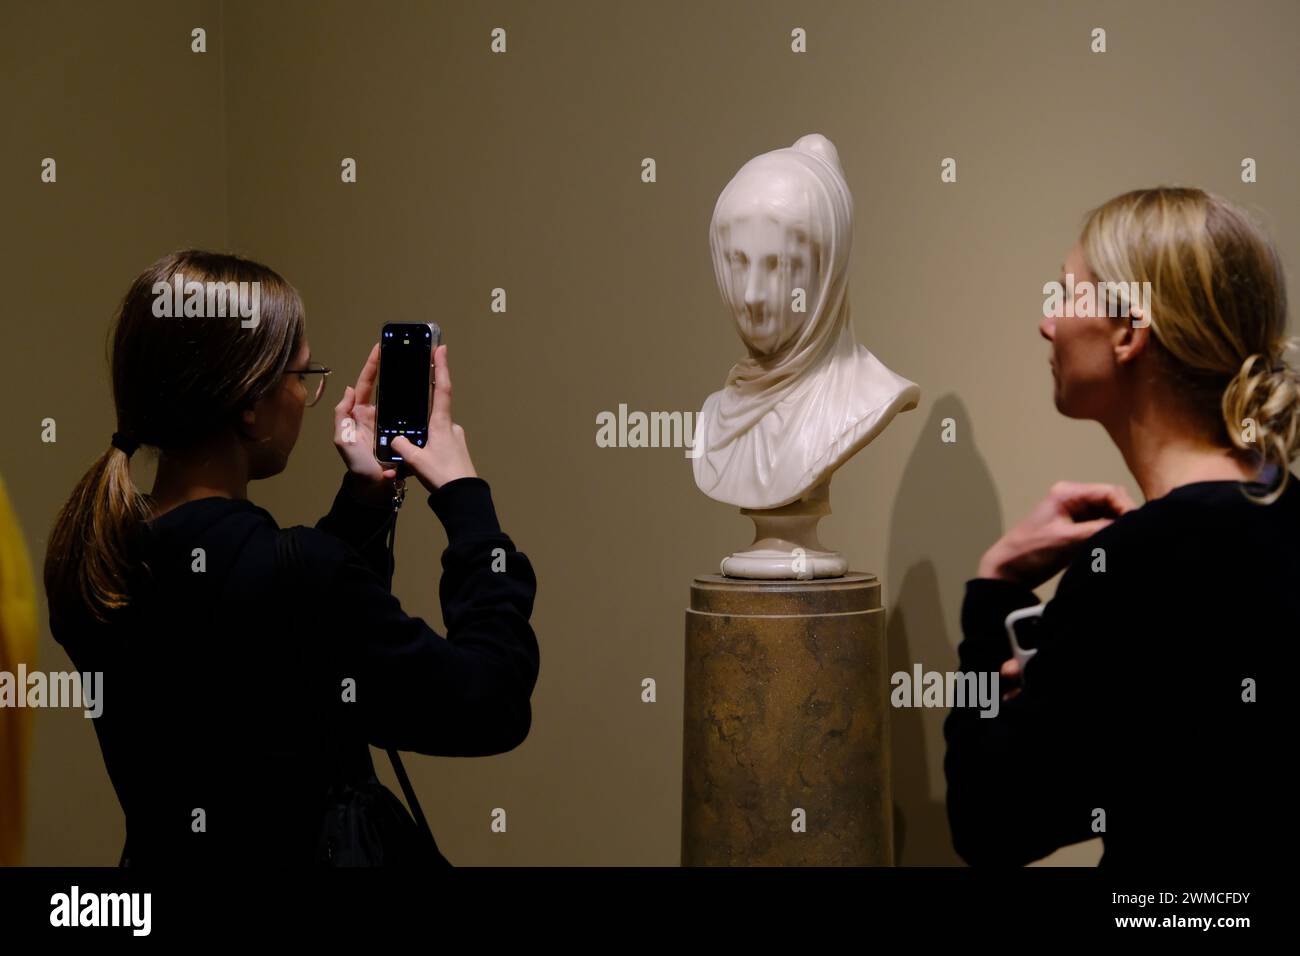 Die Marmorstatue verschleierte Büste, auch bekannt als die verschleierte Nonne, möglicherweise vom italienischen Künstler Giuseppe CRoff, ausgestellt in der National Gallery of Art.Washington DC.USA Stockfoto